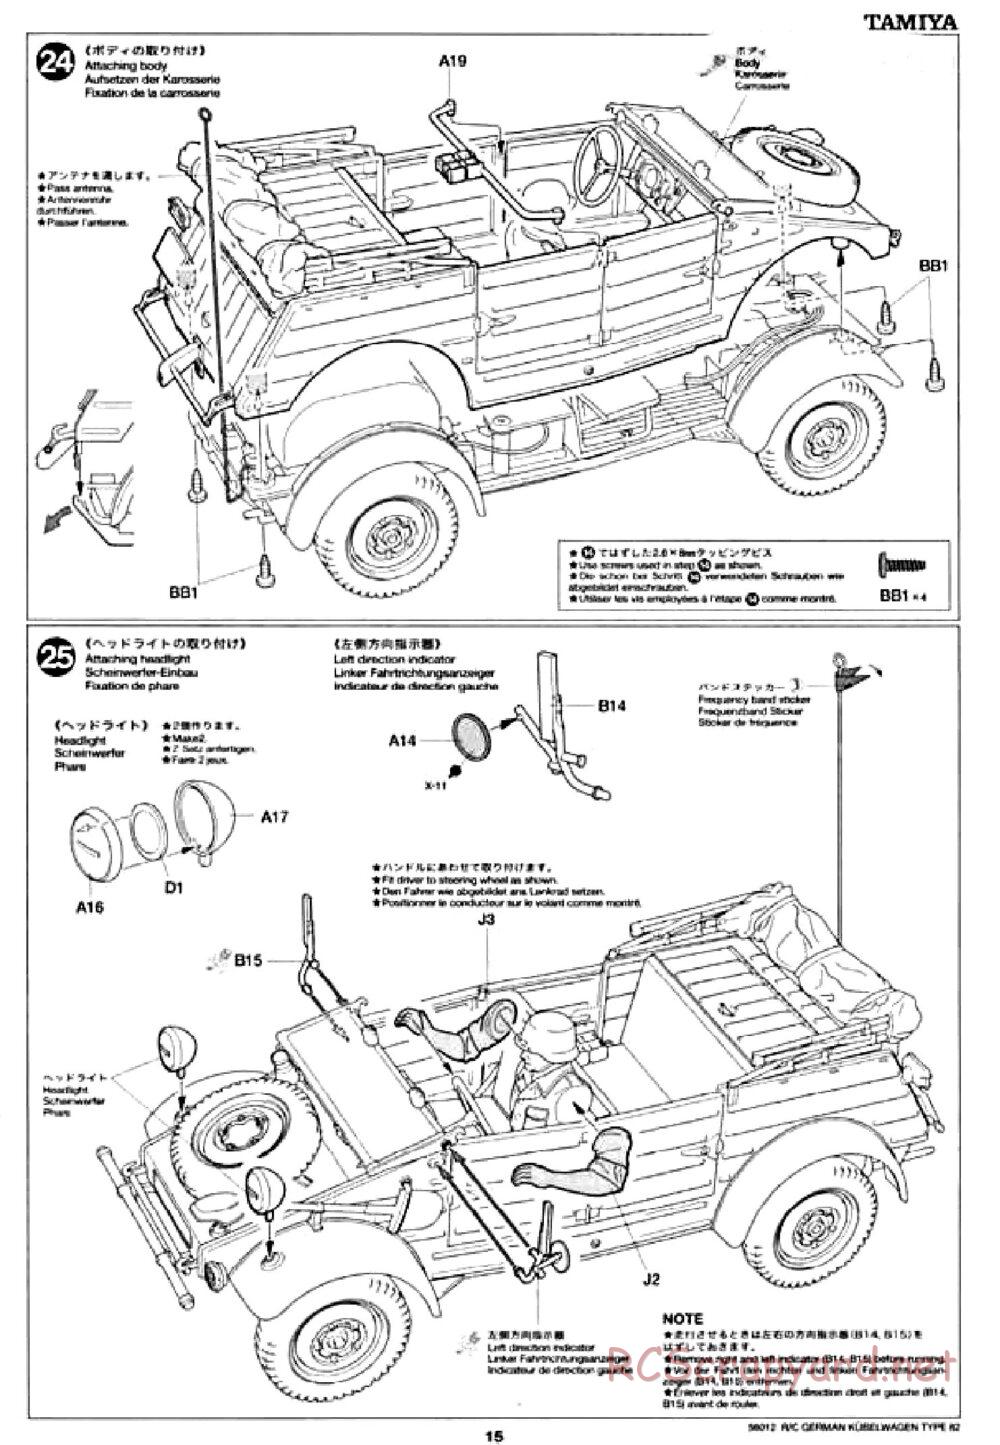 Tamiya - Kubelwagen Type 82 Chassis - Manual - Page 15